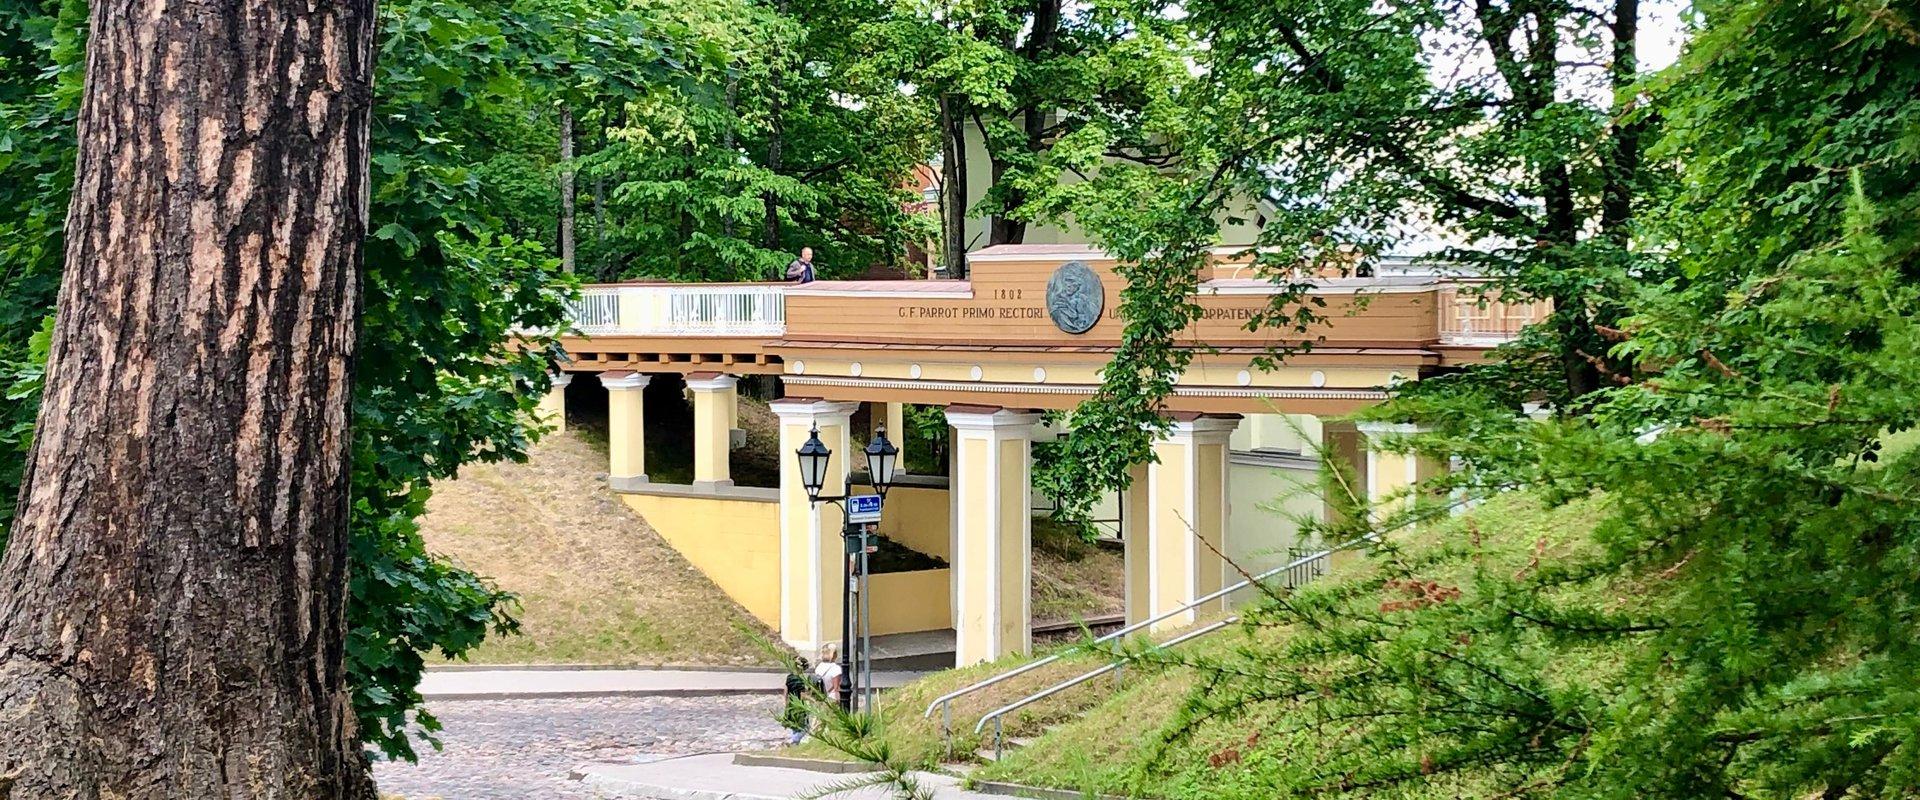 Engelsbrücke in Tartu